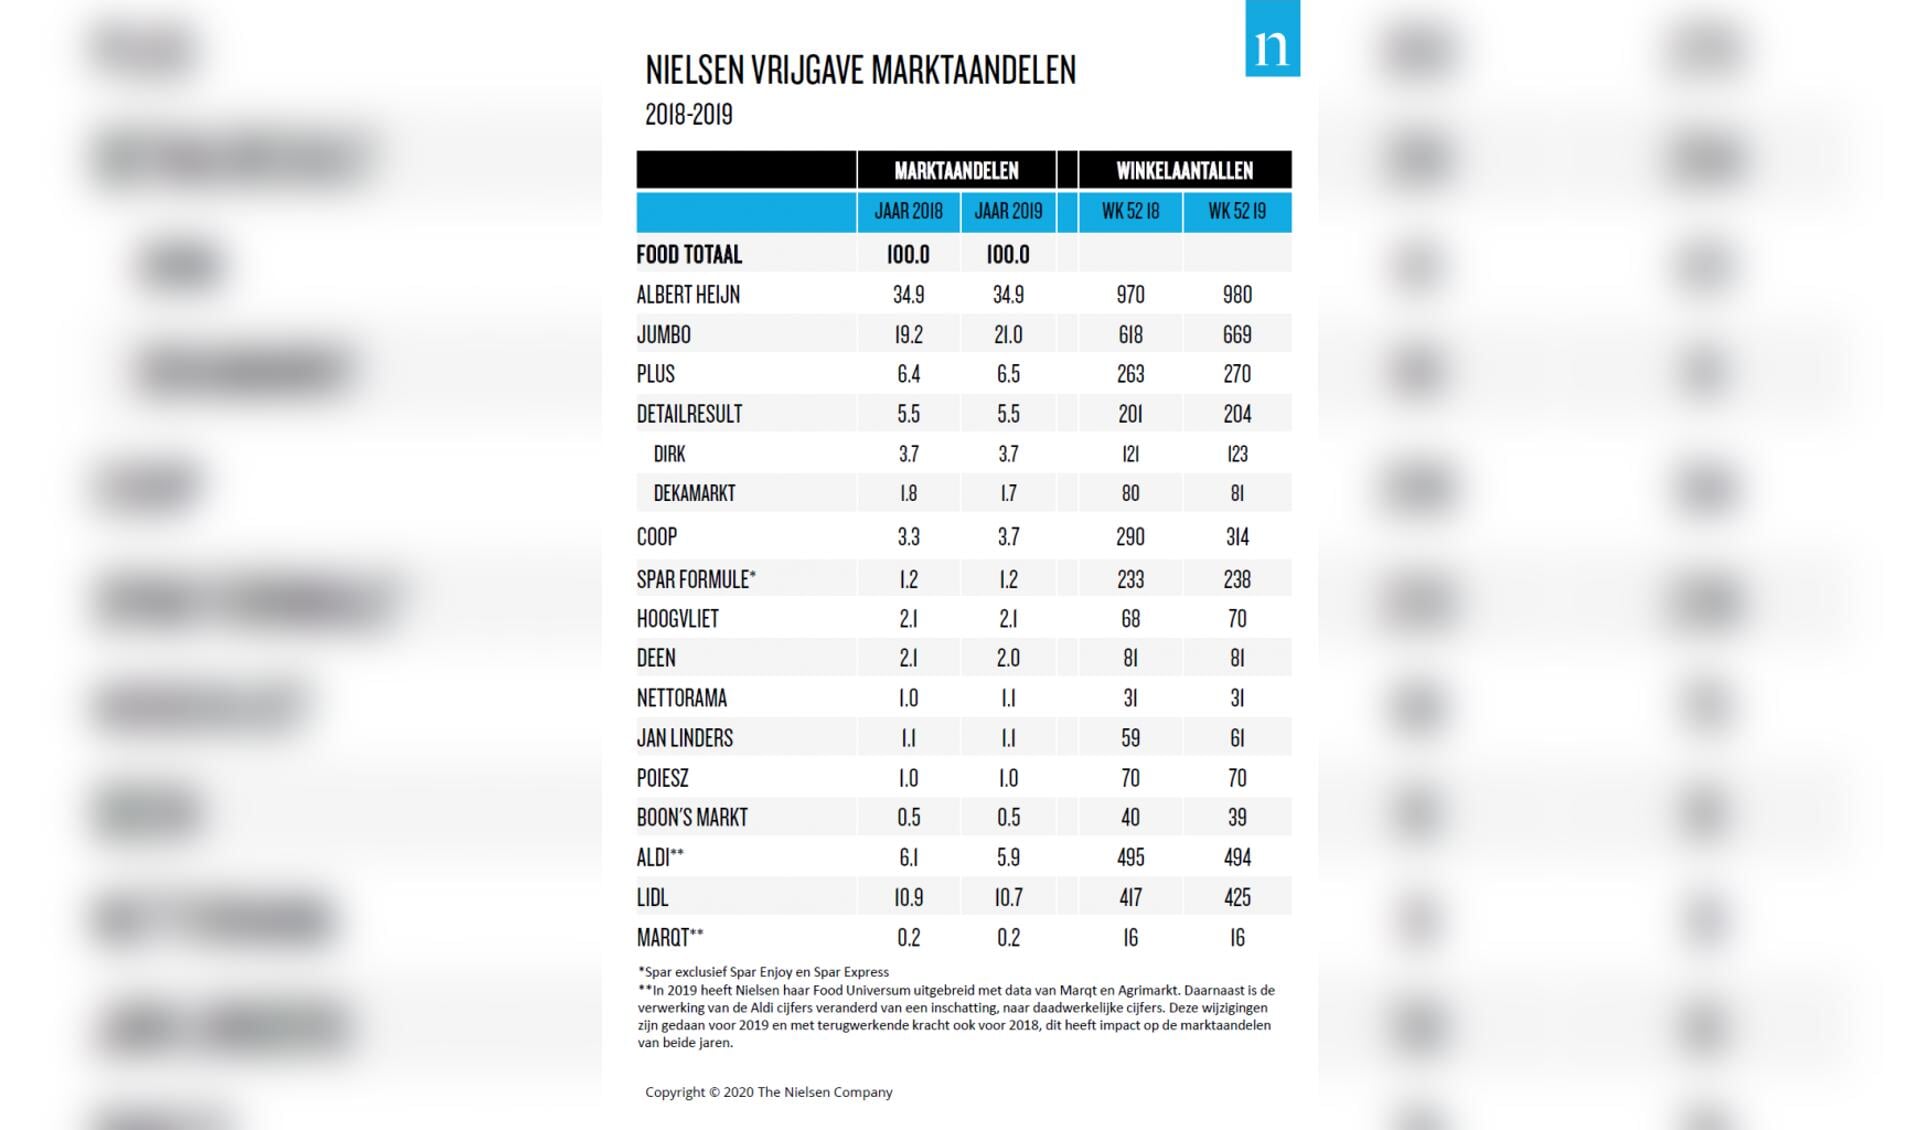 Nielsen publiceert marktaandelen supermarkten; Albert Heijn vlak, Jumbo fors hoger